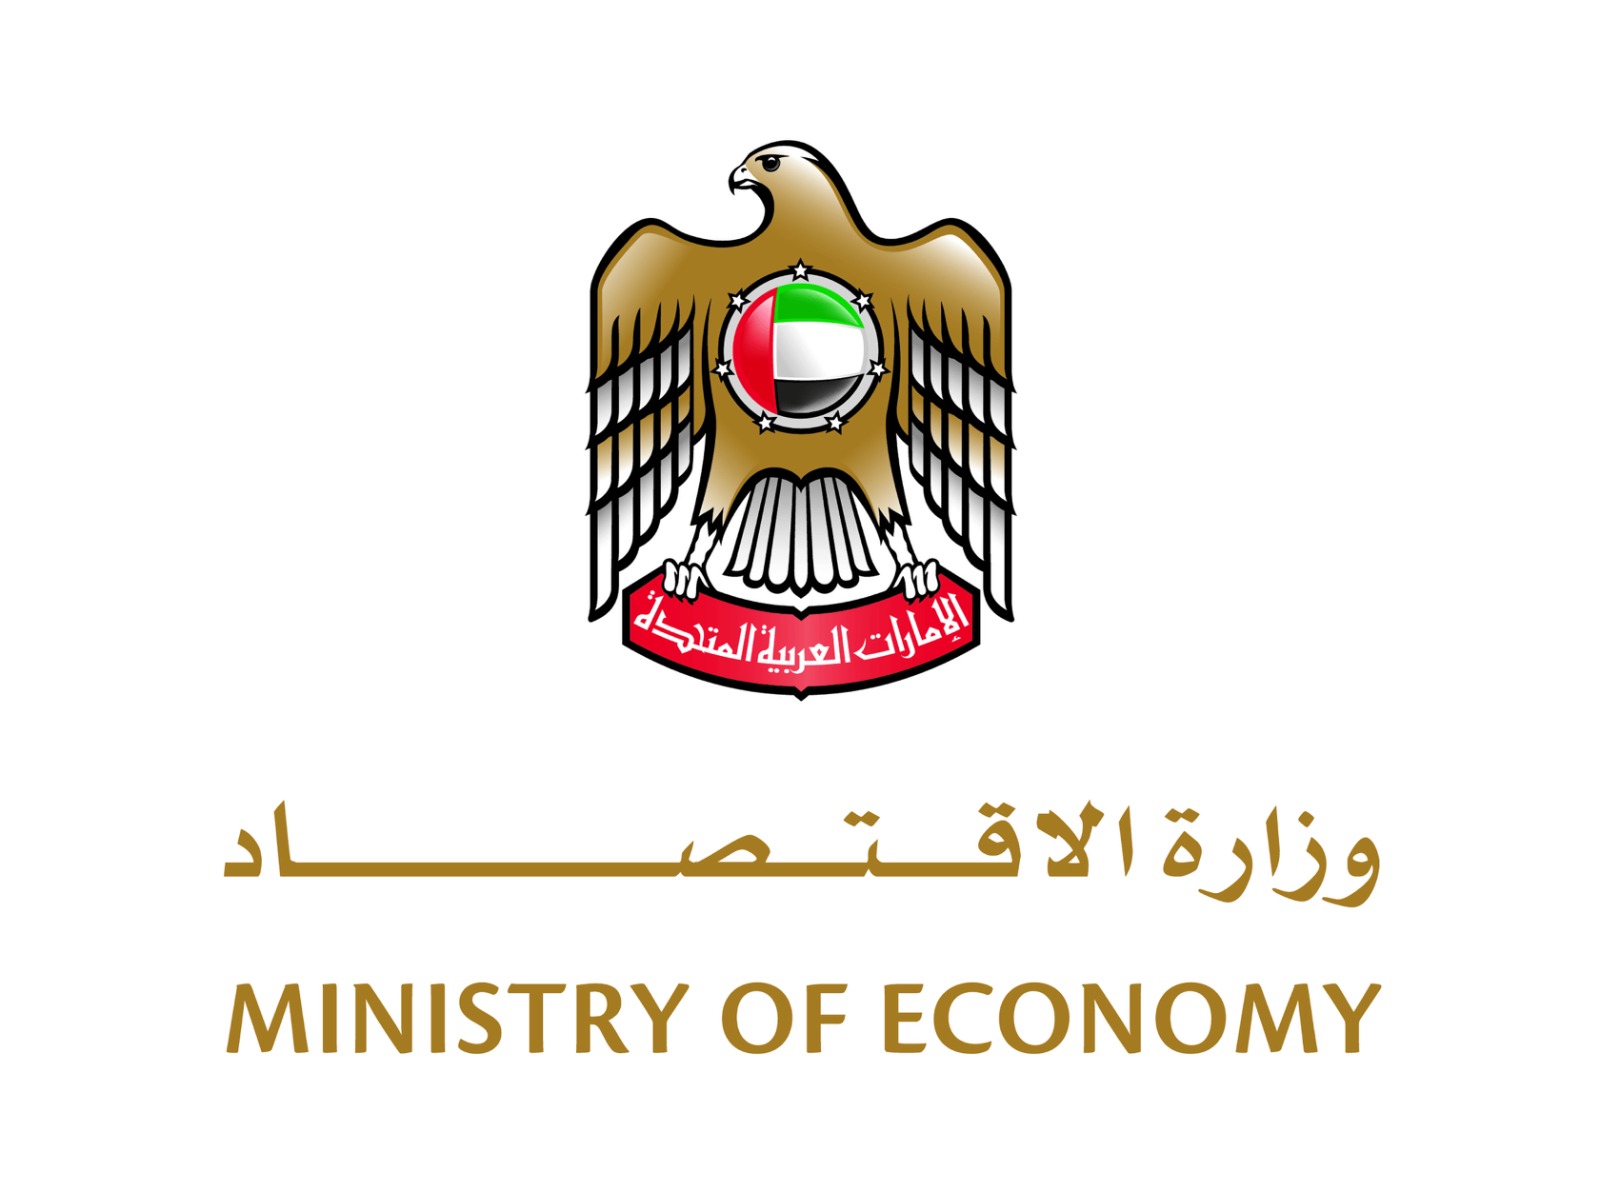 وزارة الاقتصاد